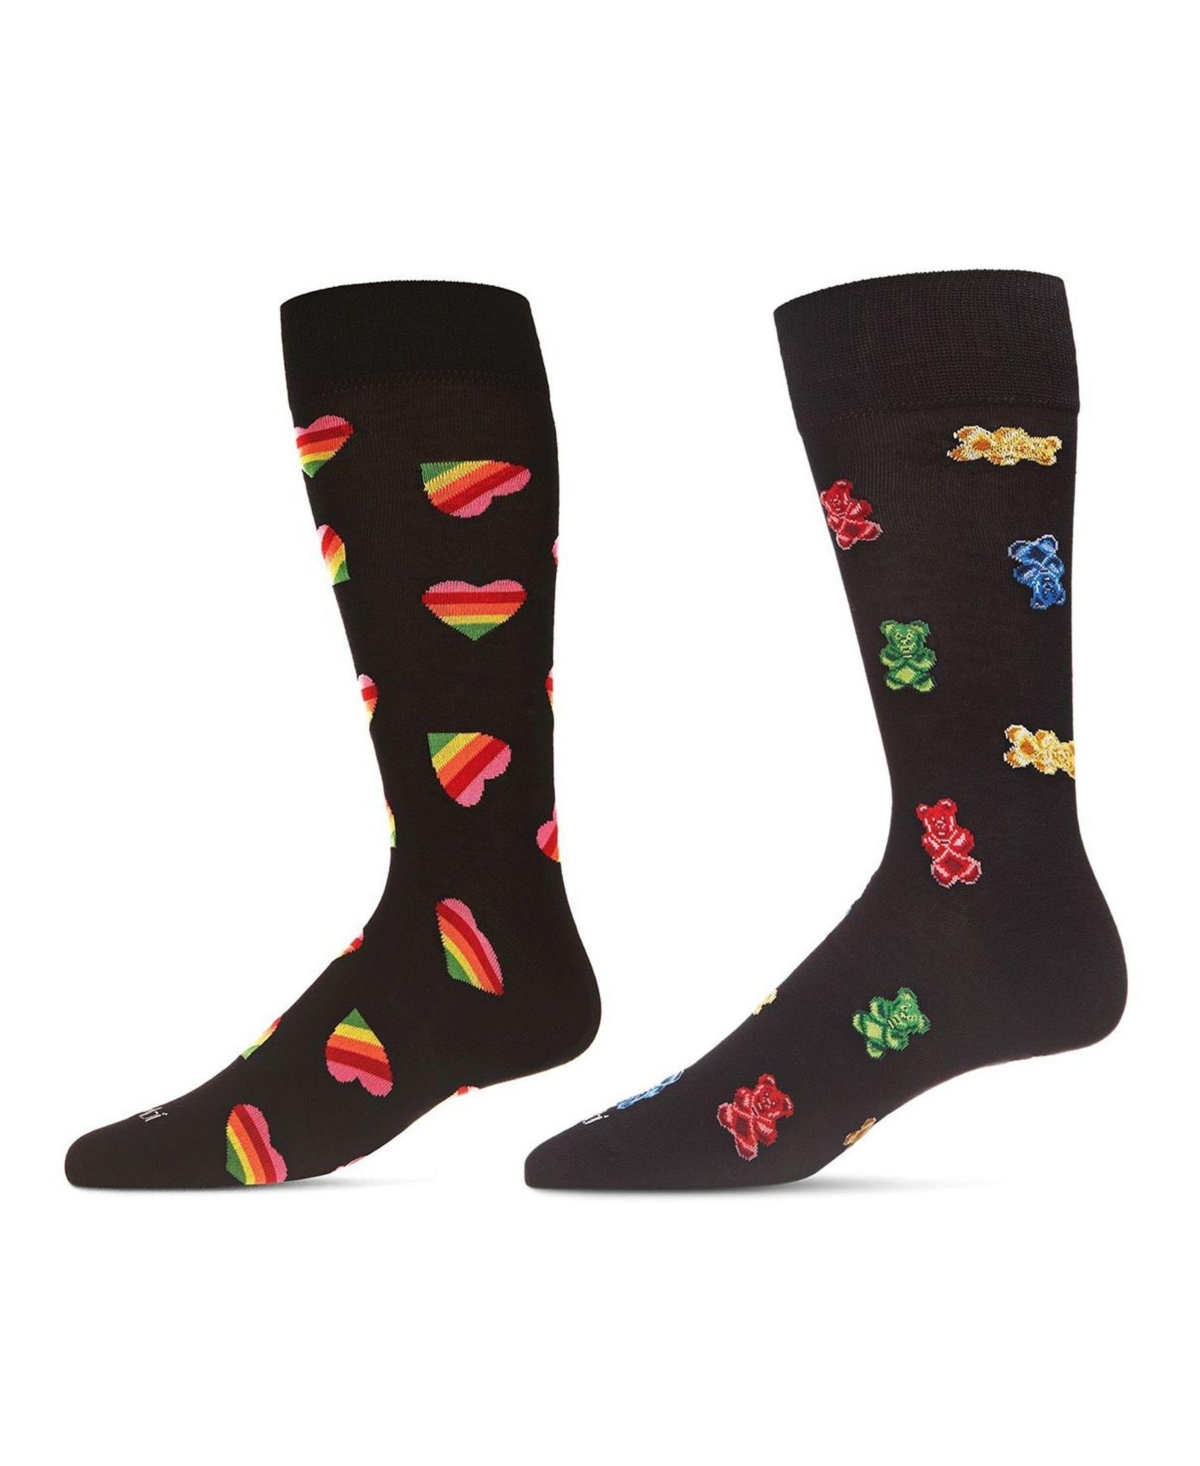 Men's Valentine Pair Novelty Socks, Pack of 2 - Black-Black